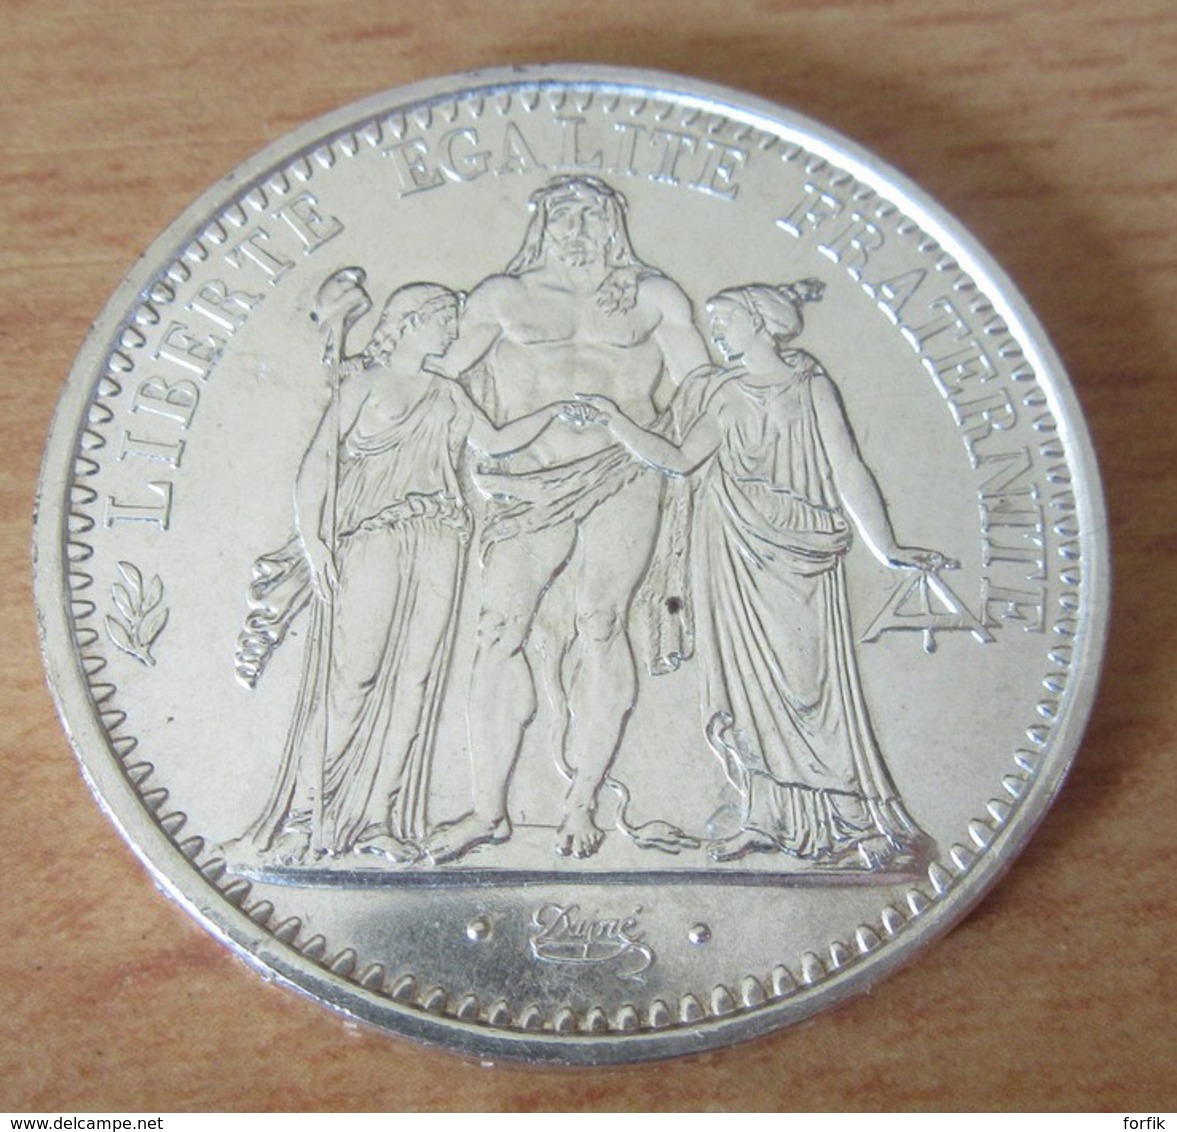 France - Lot De 4 Monnaies En Argent - 10 Francs Hercule 1966 / 1967, 10 Et 20 Francs Turin 1938 - Etat SUP - Collections